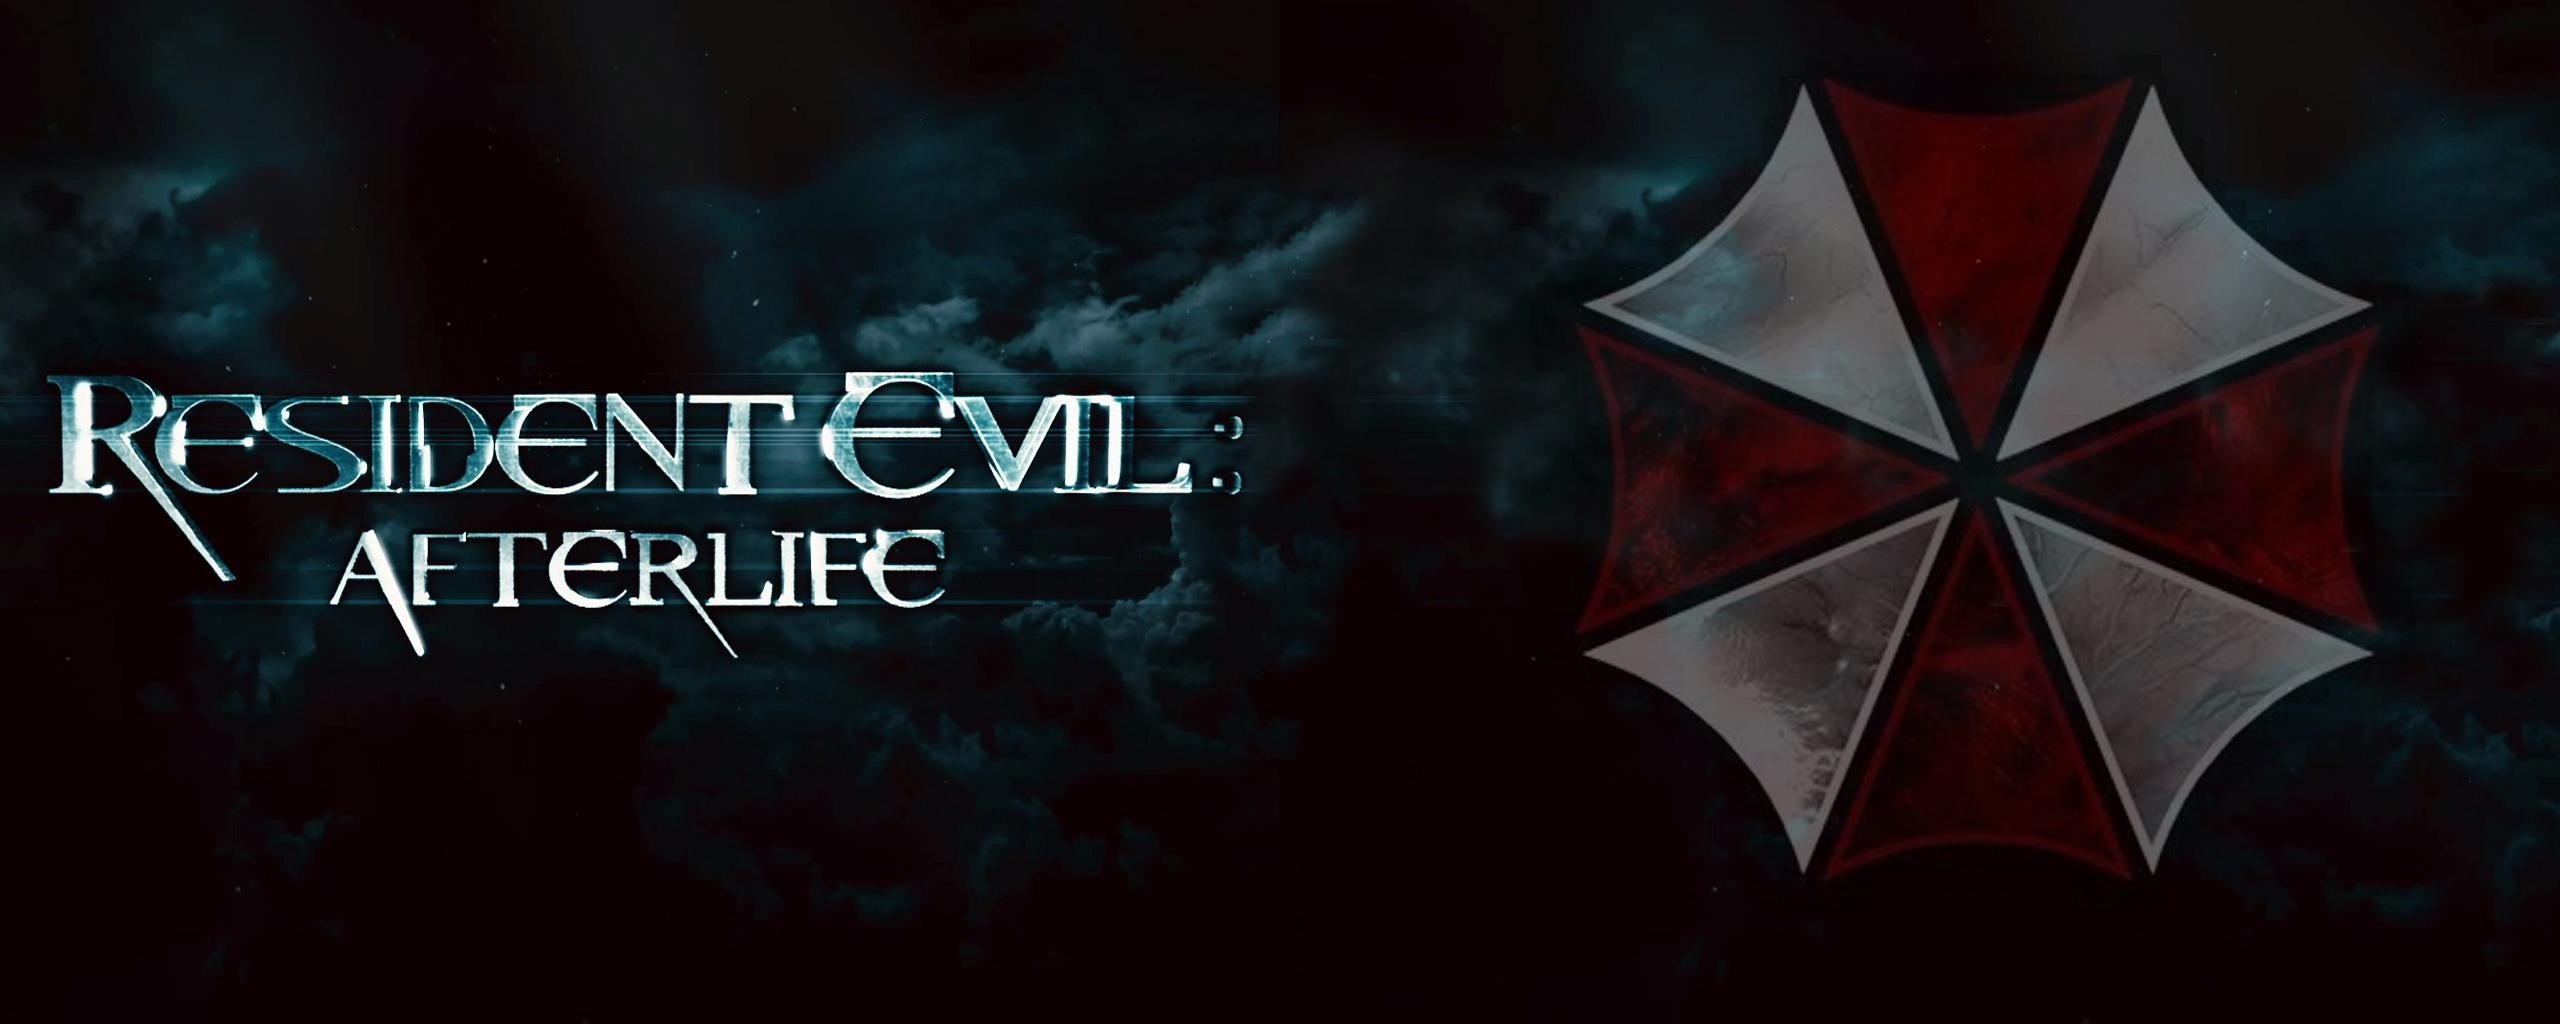 Resident Evil, Resident Evil: Afterlife Wallpaper